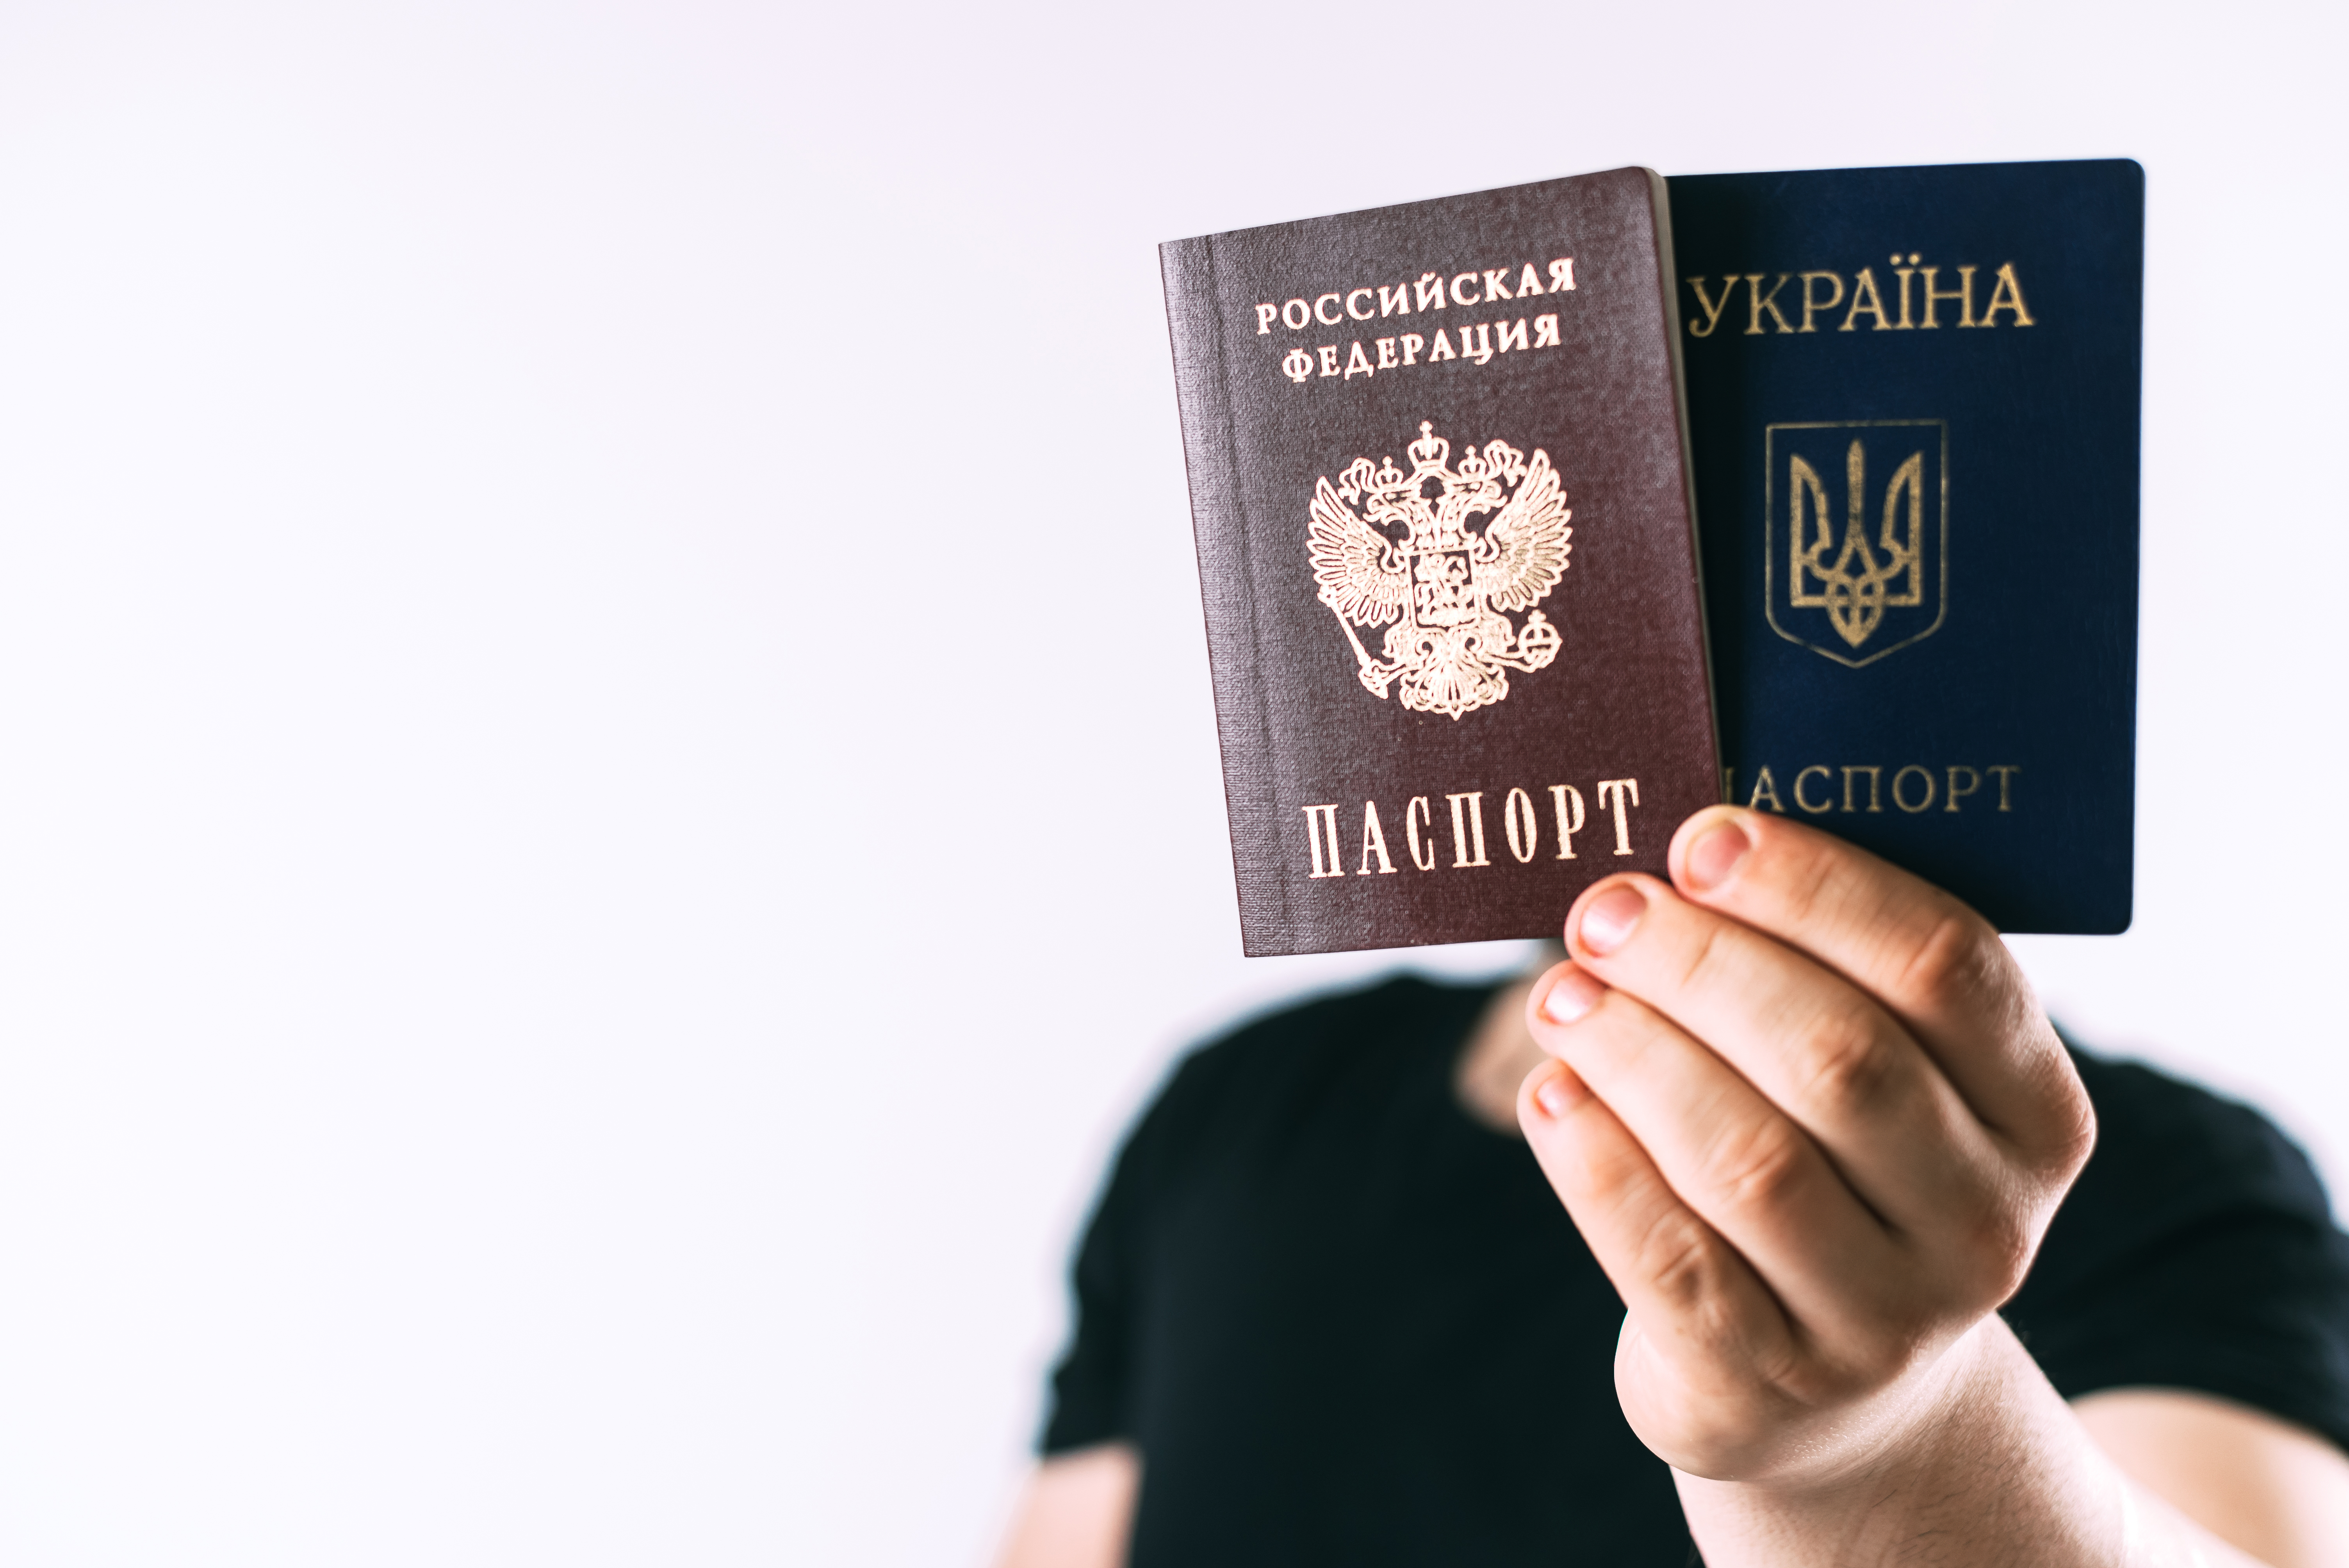 Пересечение границы с 2 паспортами: РФ и Украины